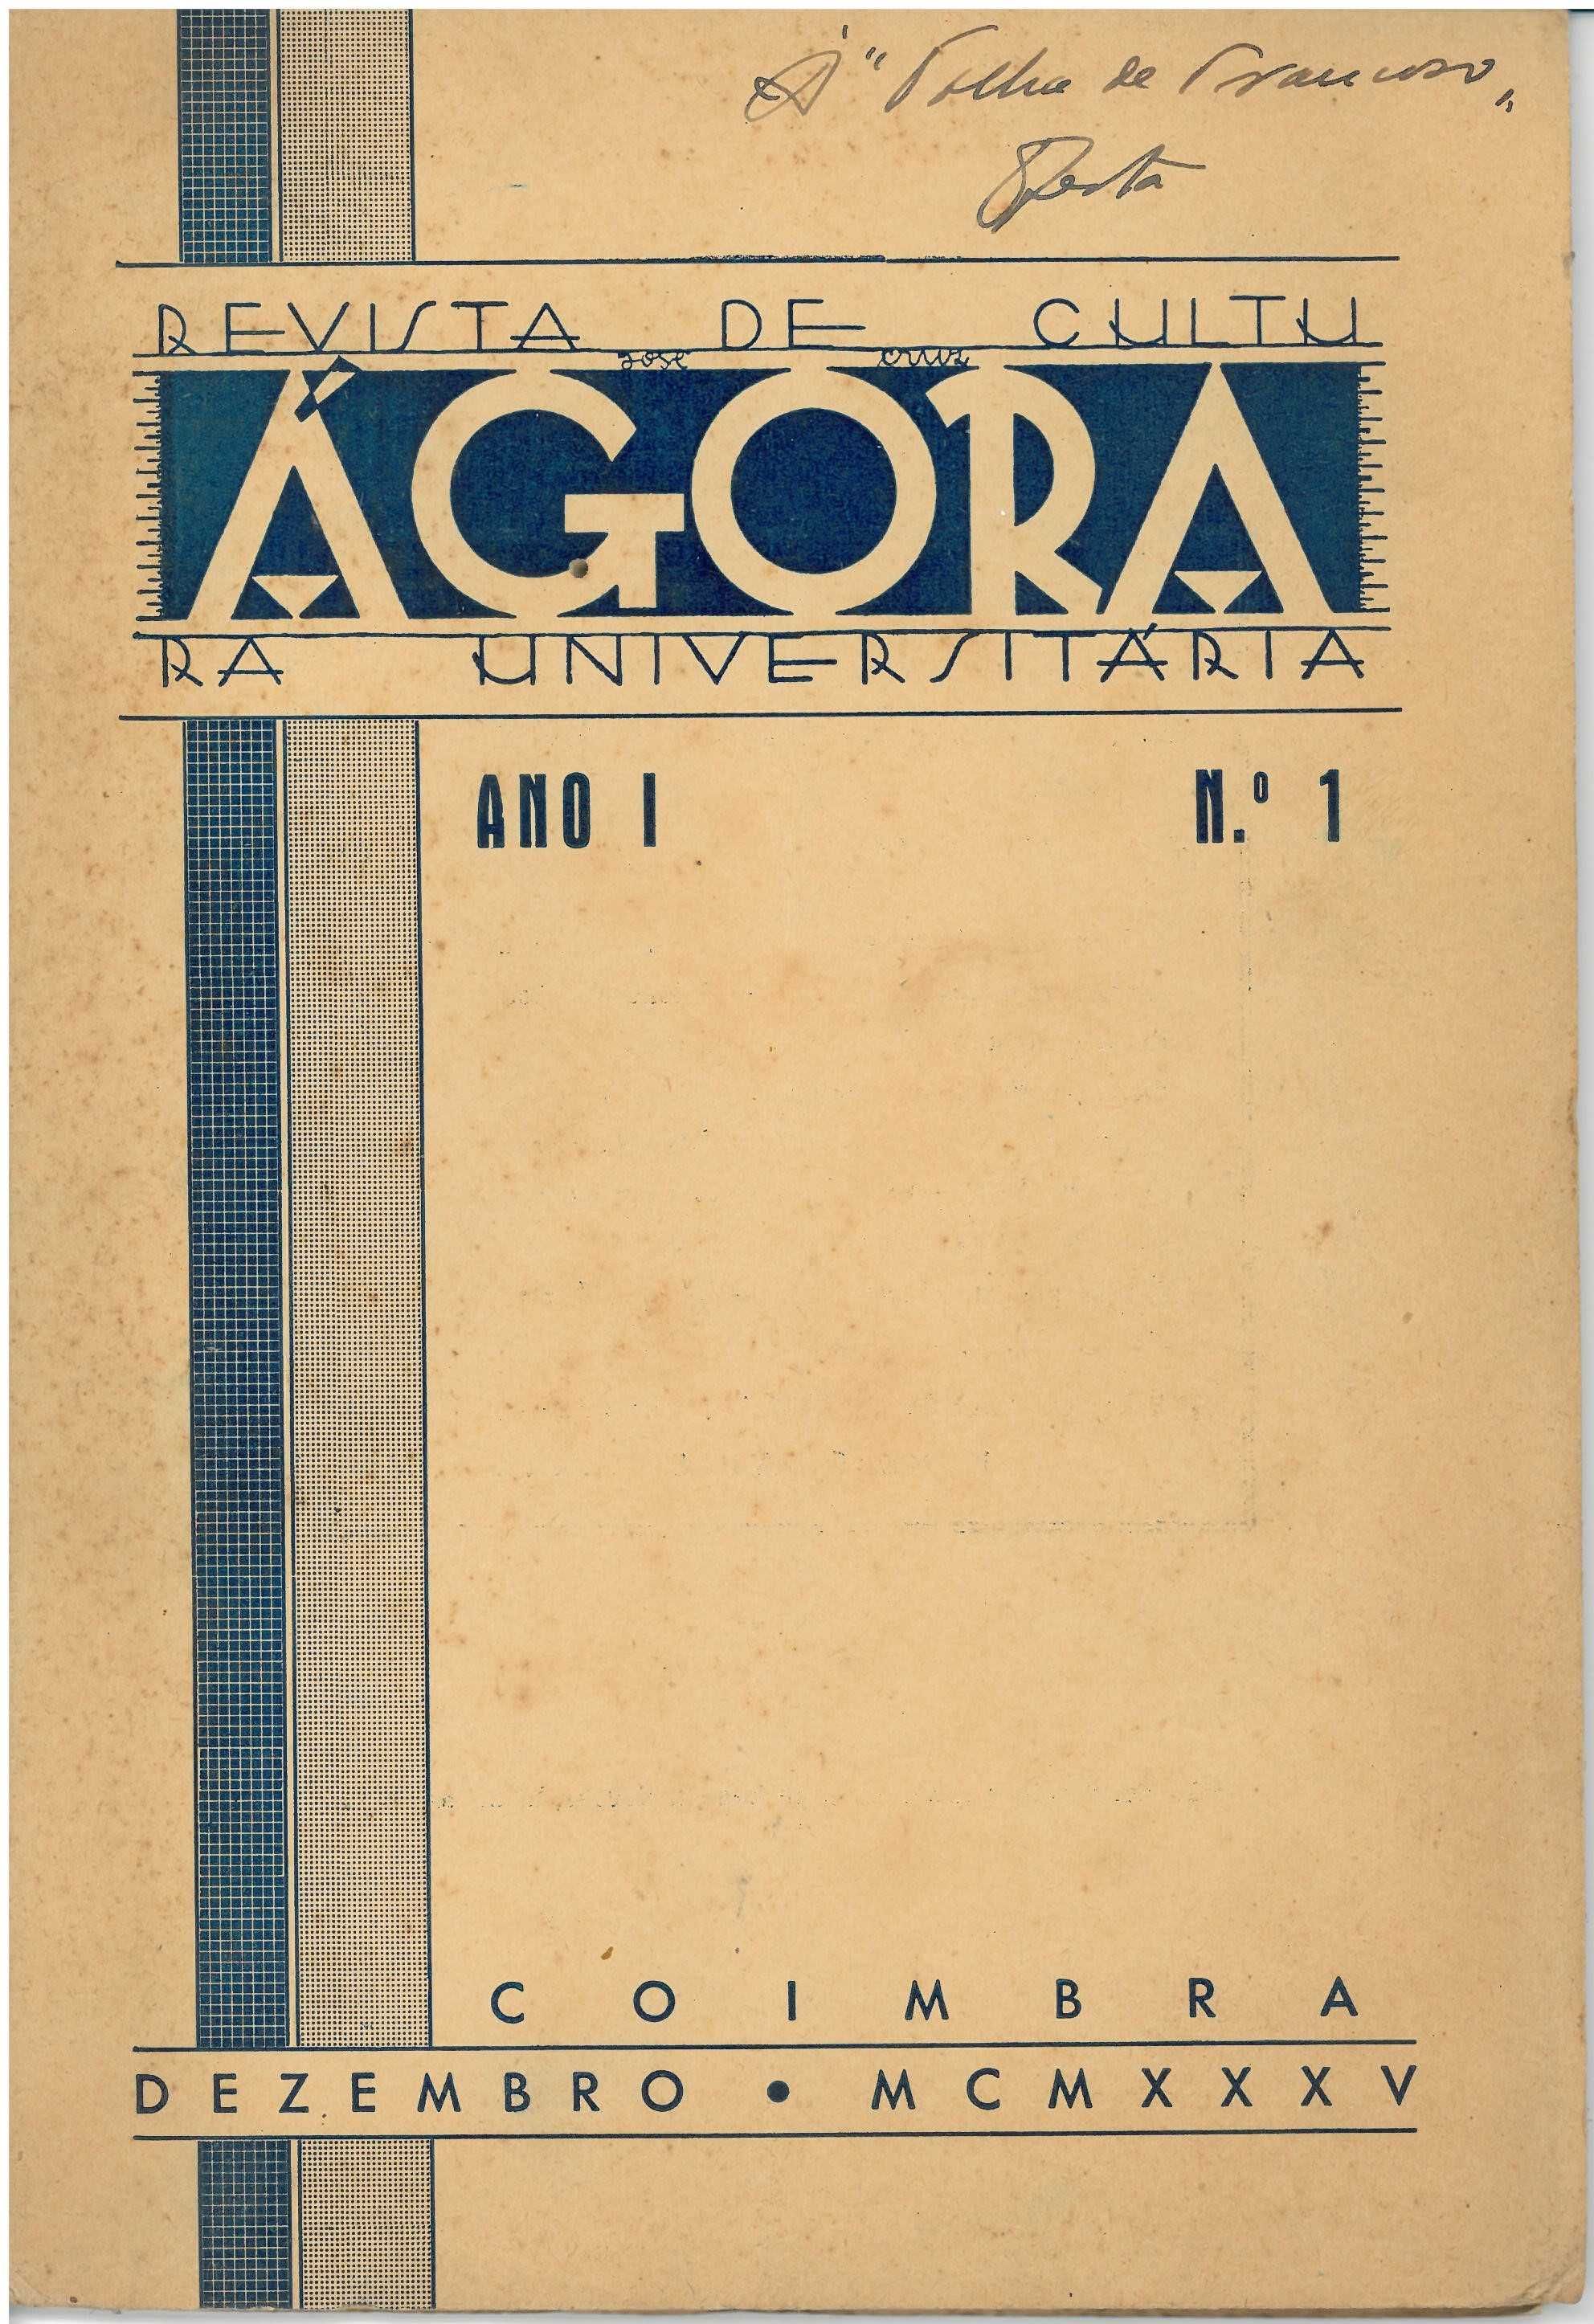 Ágora. Revista de Cultura Universitária